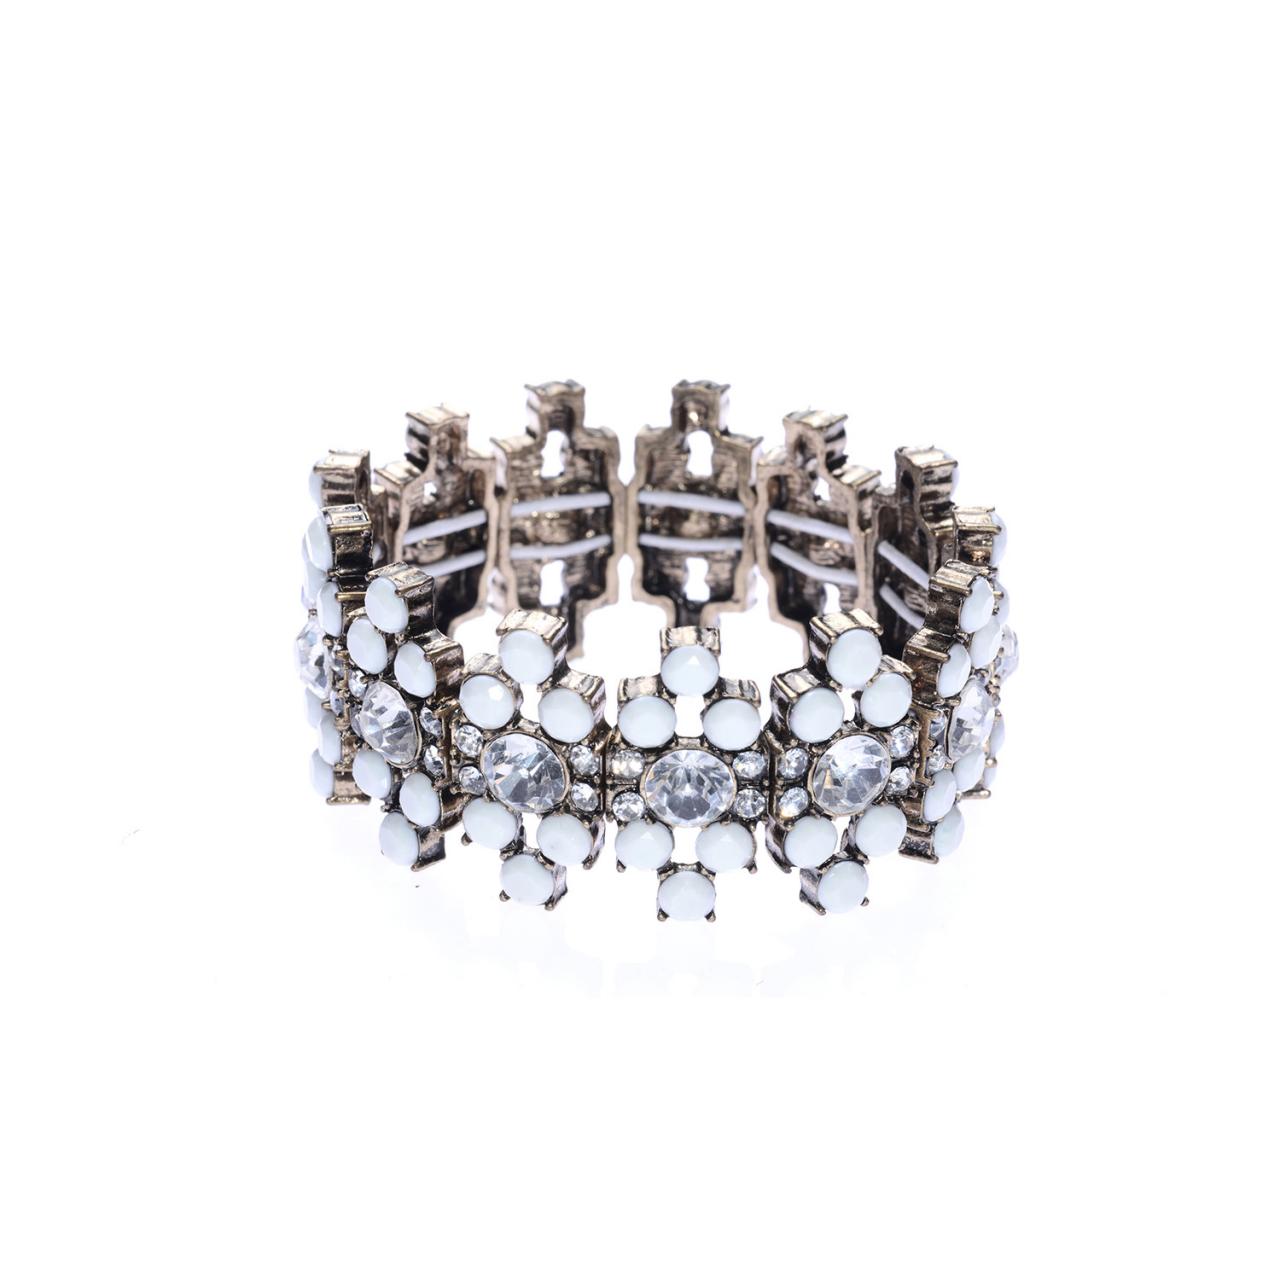 White Stone Bracelet / Stretch Bracelet / Crystal Bracelet / Bling Bracelet / Art Nouveau Bracelet / Bridal Bracelet / Princess Bracelet